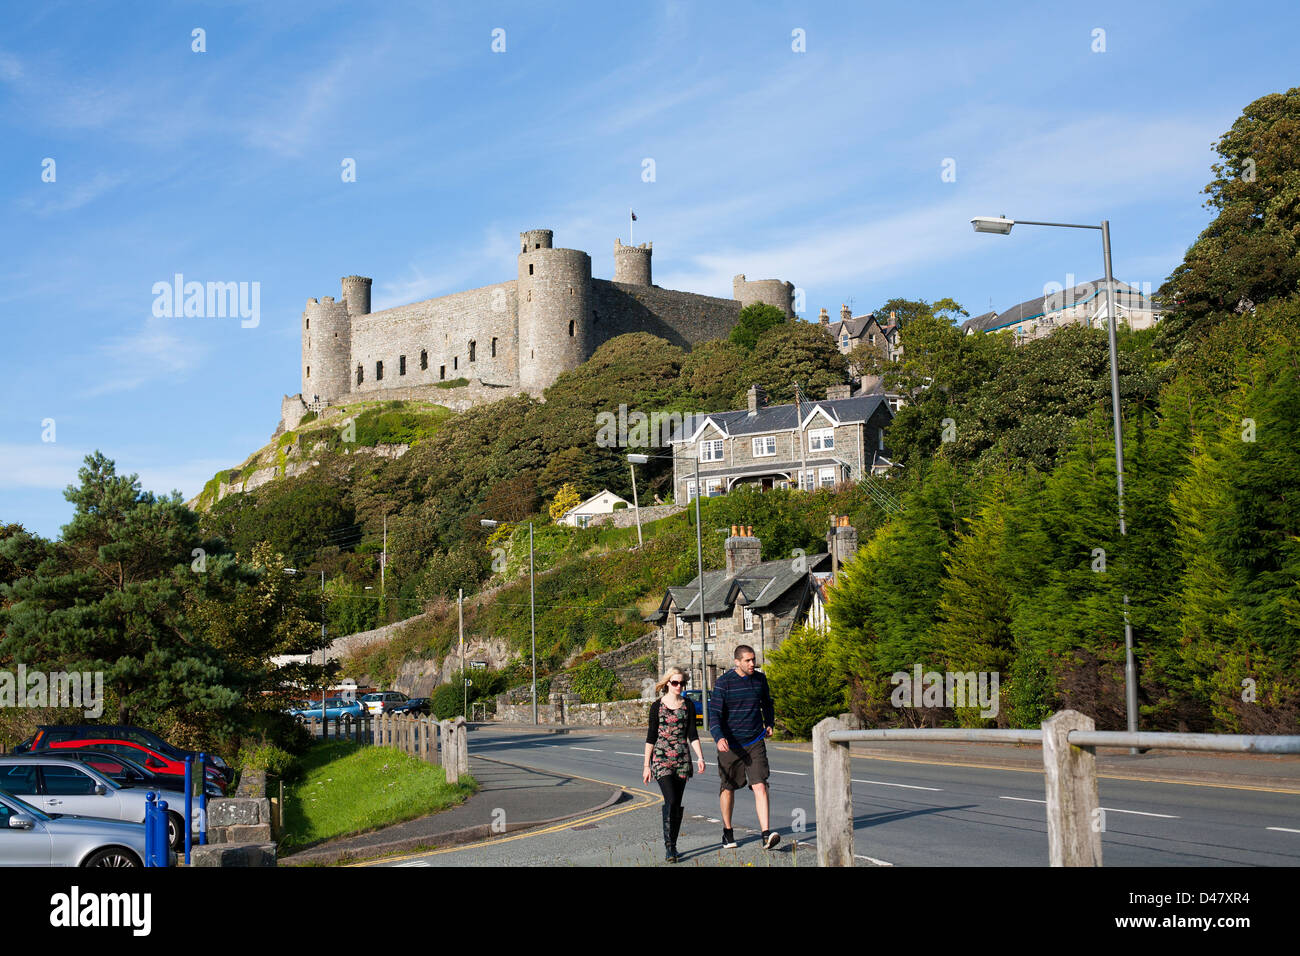 Deux touristes passent devant un château gallois historique dans le Nord du Pays de Galles lors d'une journée ensoleillée Banque D'Images